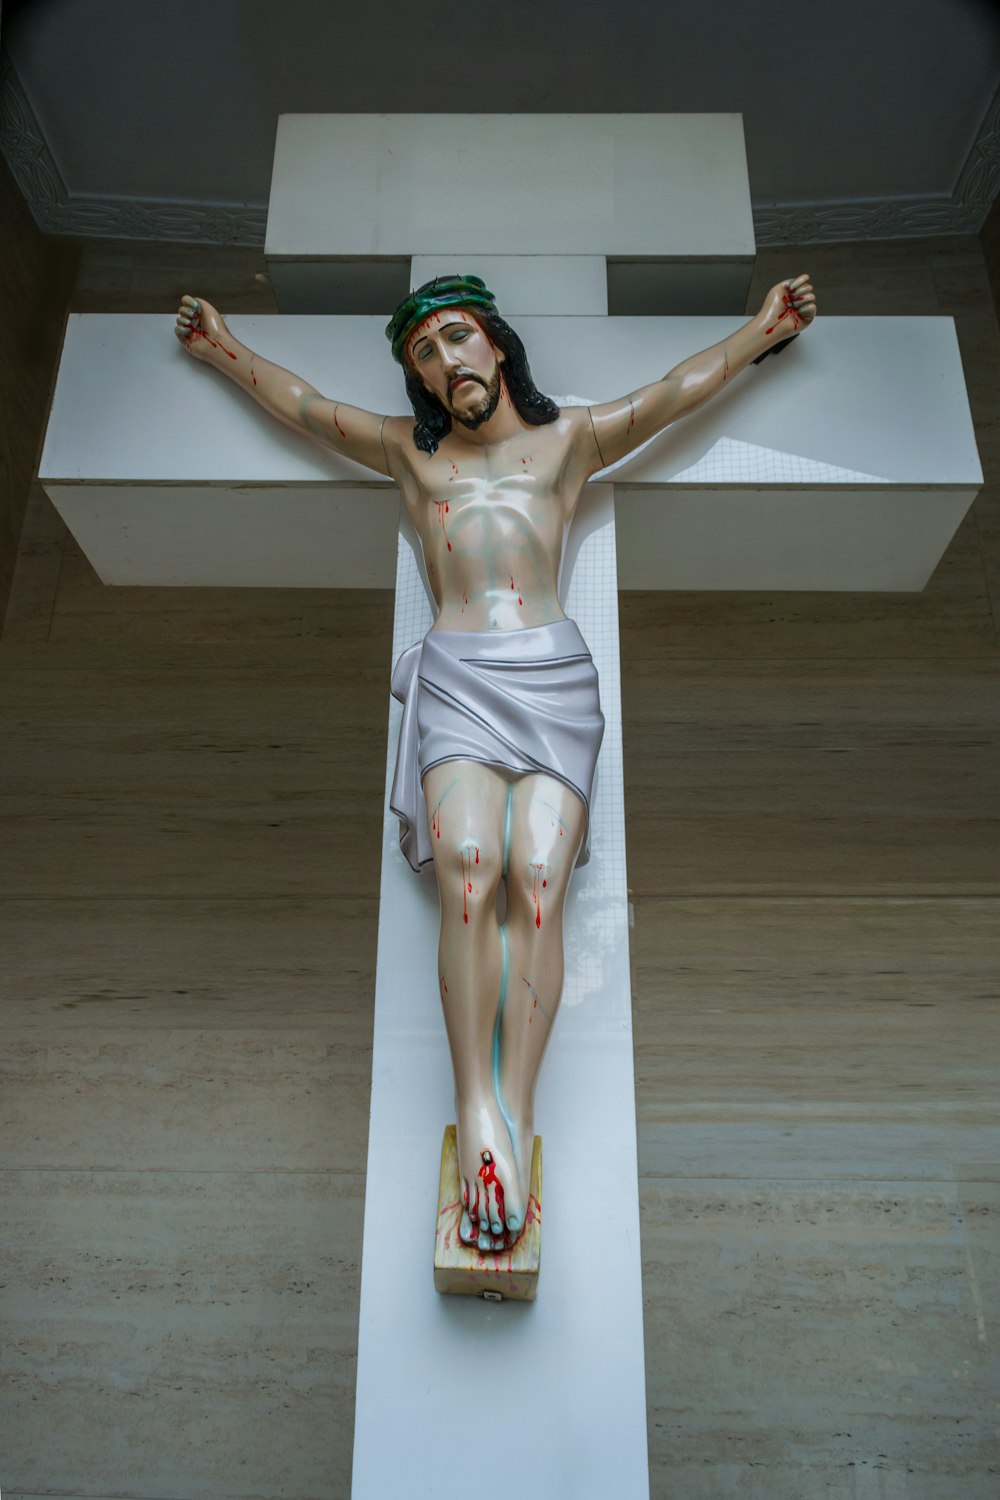 방에 있는 십자가에 달린 예수의 동상